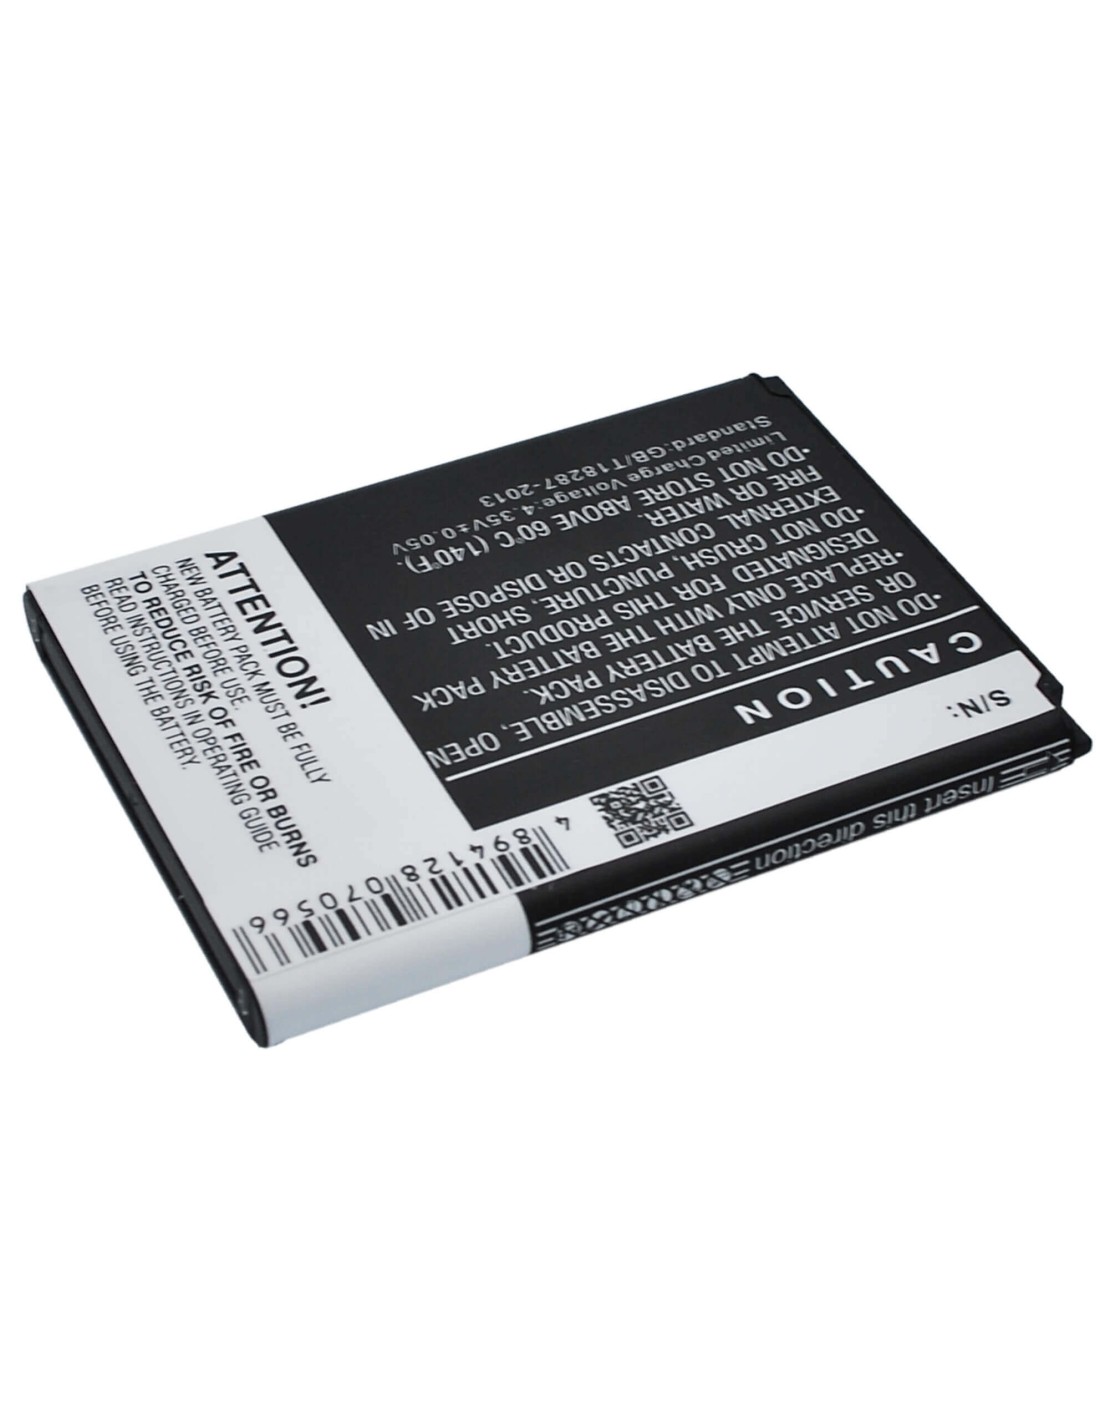 Battery for Samsung SCH-i930, GT-I8750, ATIV S 3.8V, 2300mAh - 8.74Wh